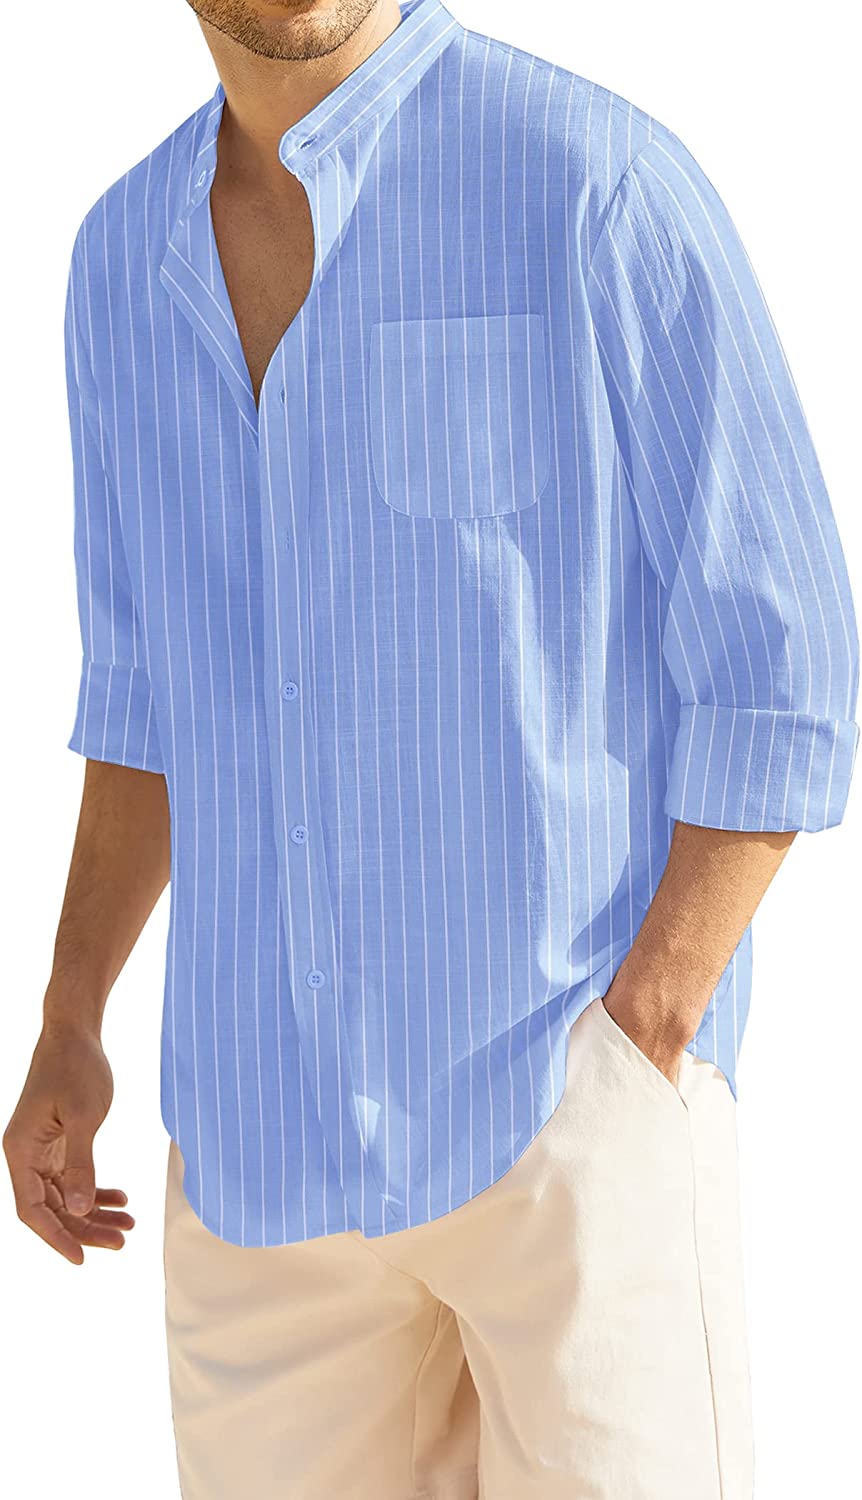 COOFANDY Men's Casual Linen Shirts Short Sleeve Button Down Shirt